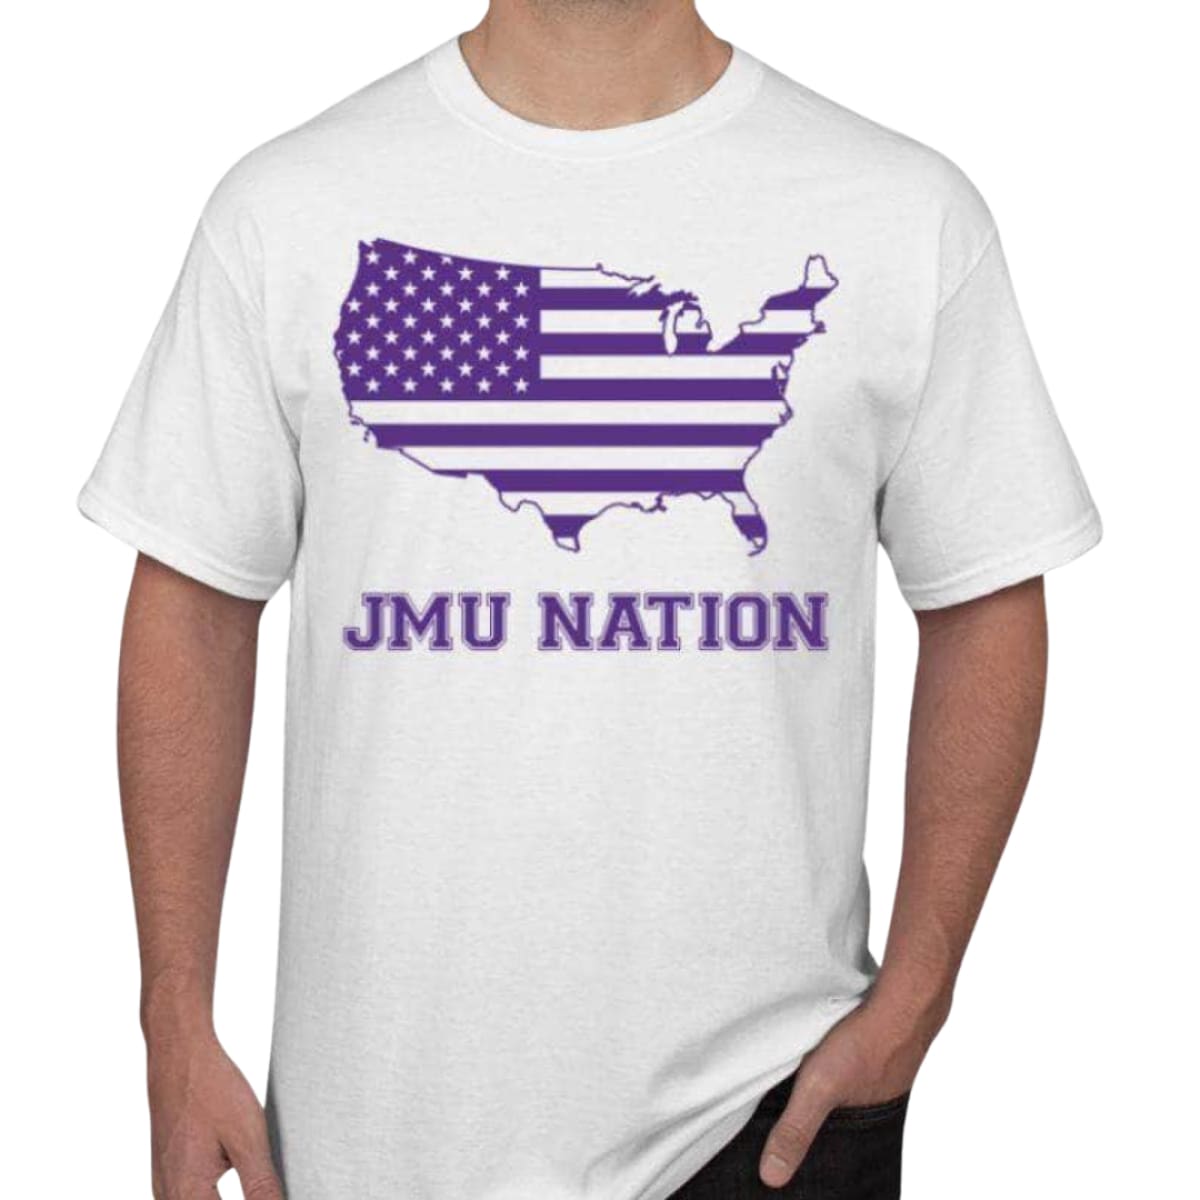 JMU Nation Men’s/Unisex Short Sleeve T-Shirt - S / White